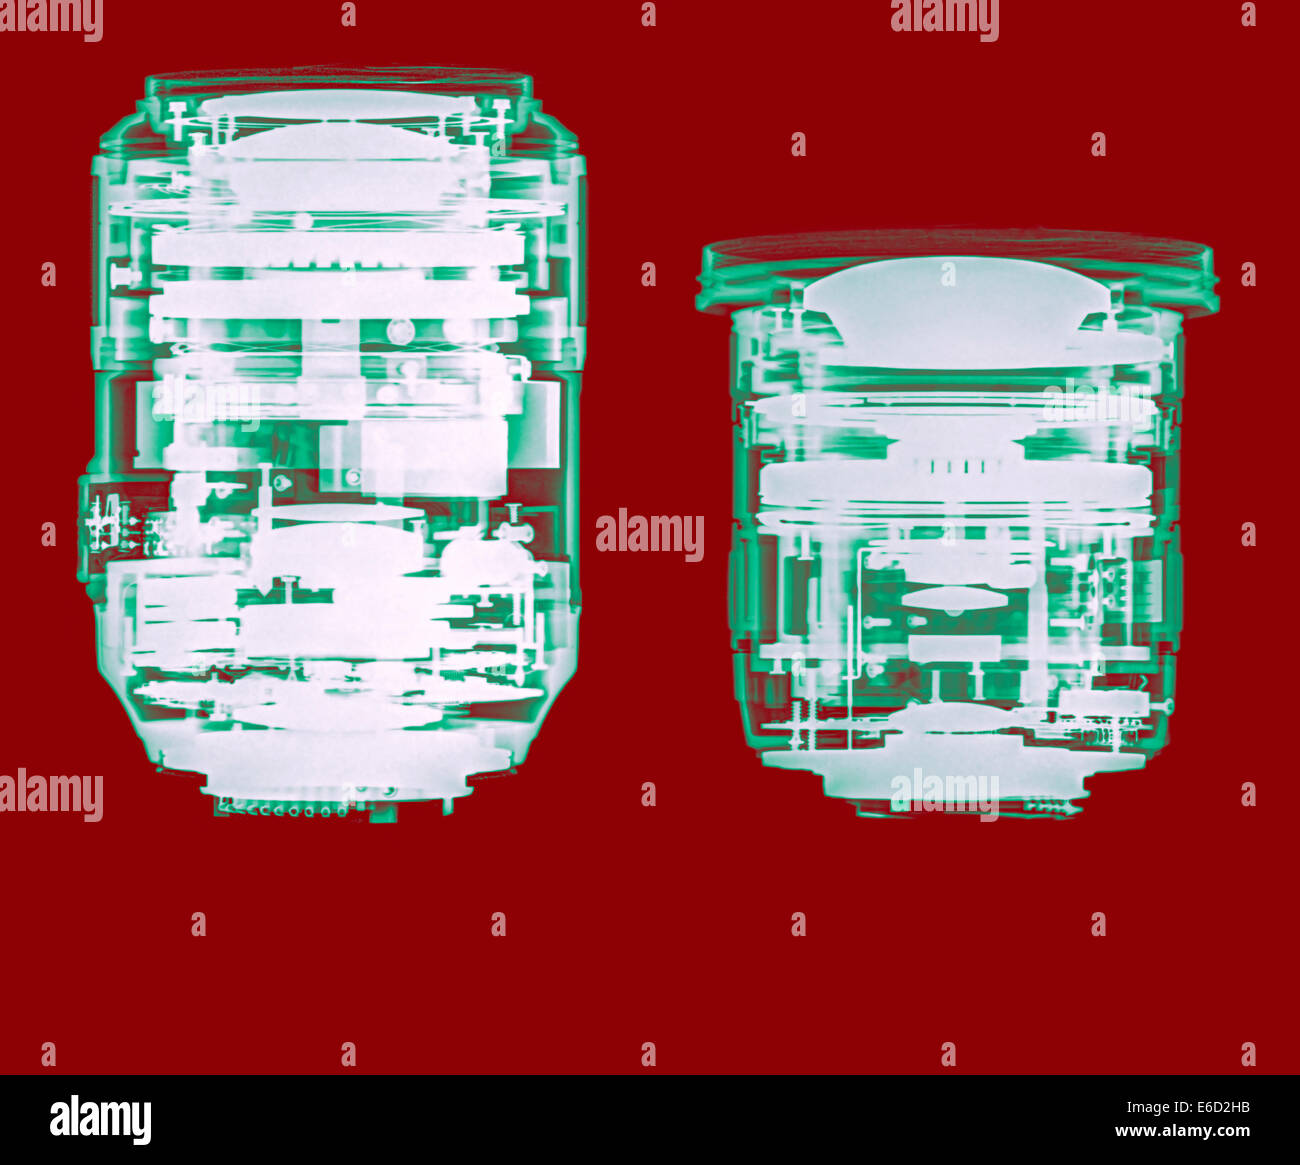 Obiettivo telecamera a raggi x. Gli elementi ottici possono essere visti. Nikkor 105mm Micro (sinistra) Sigma 10-20mm zoom (destra) Foto Stock